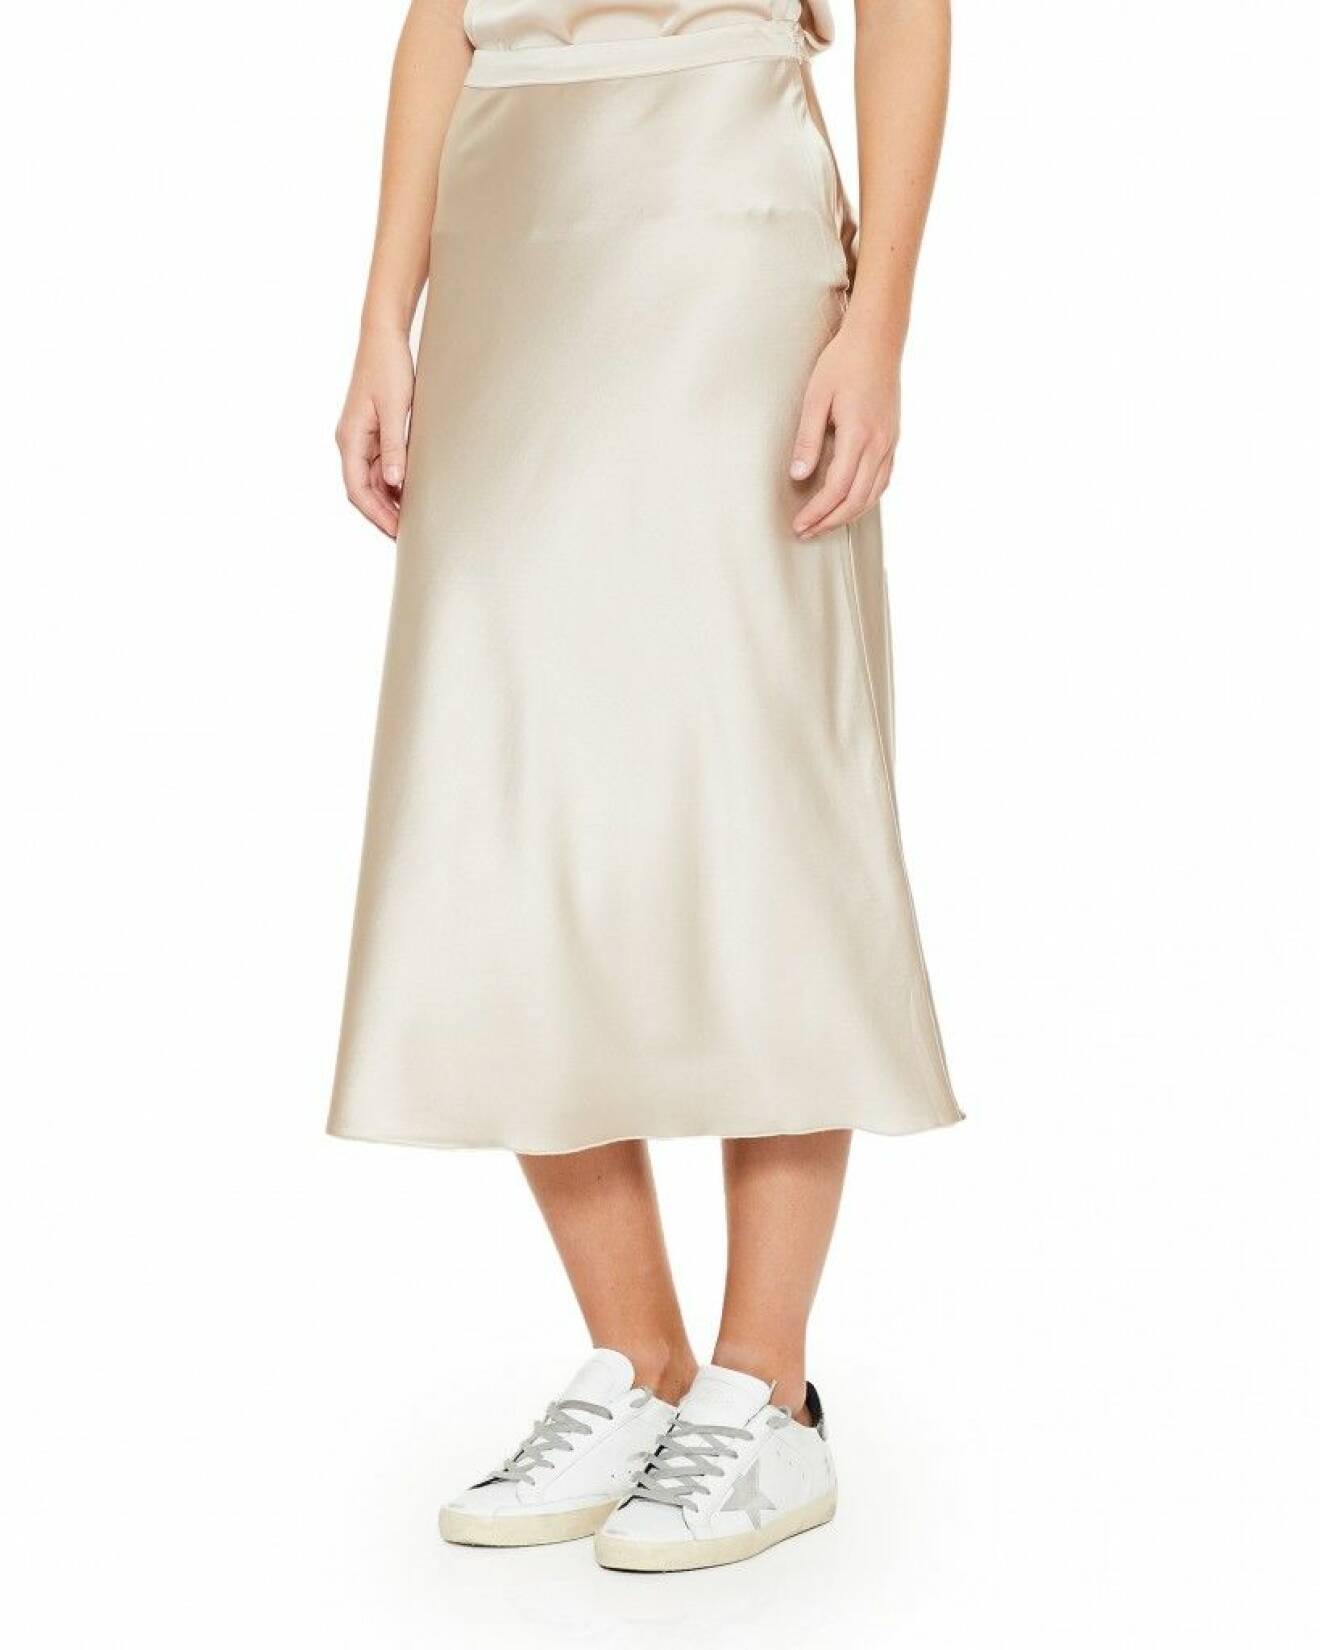 Klä dig i beige siden när du vill addera en känsla av lyx och bär den tillsammans med en vit bomullsskjorta. En perfekt matchning. Sidenkjol från Ahlvar Gallery.